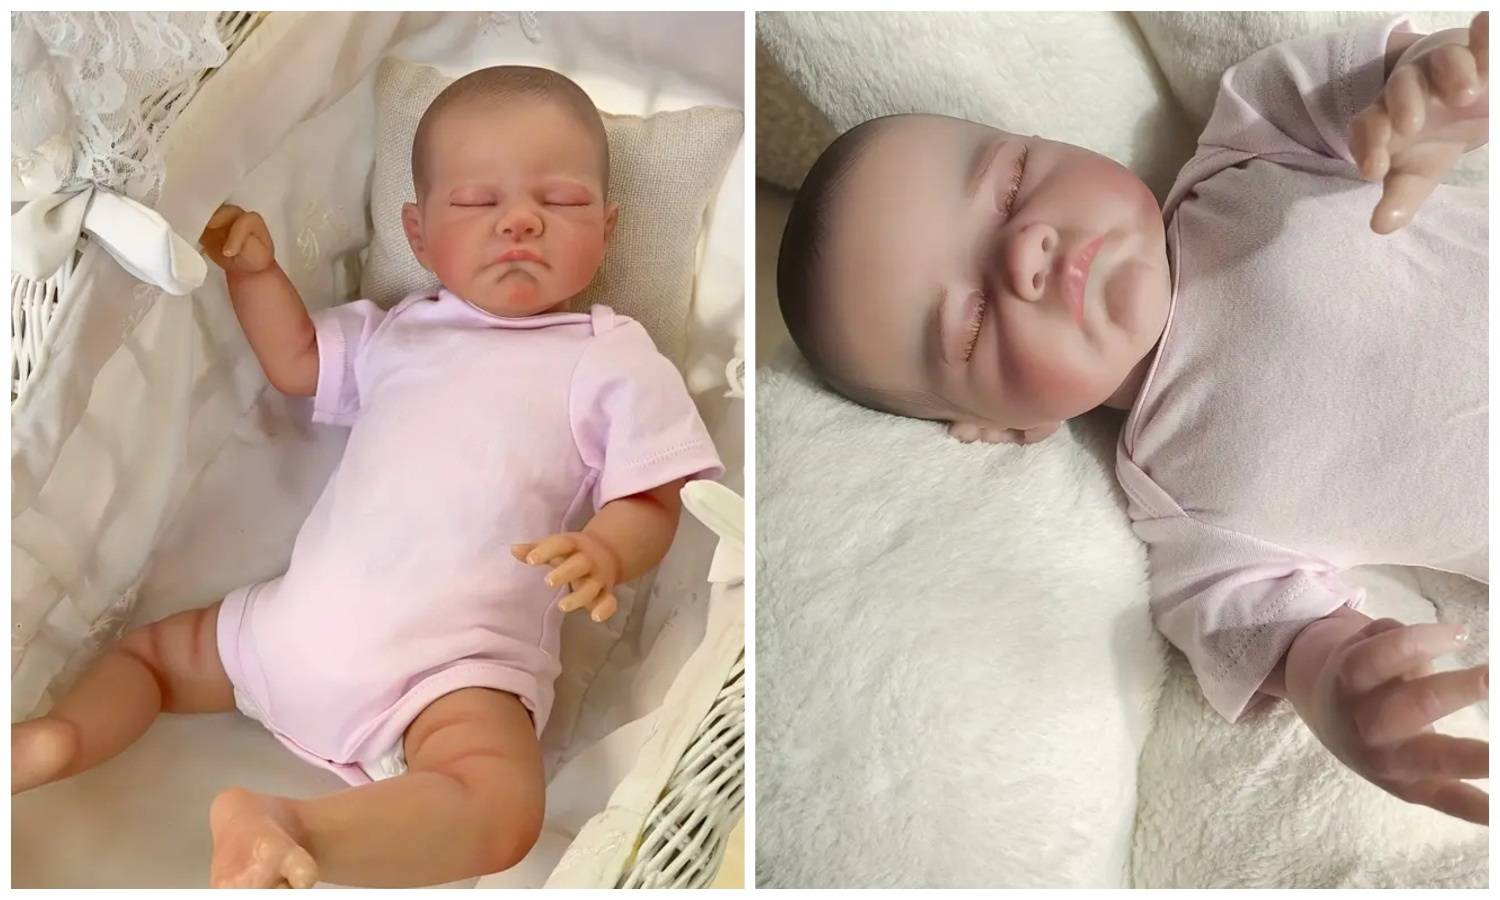 ANKETA Realistične silikonske bebe podijelile su Hrvatice. Jesu li vam super ili kao 'iz horora'?